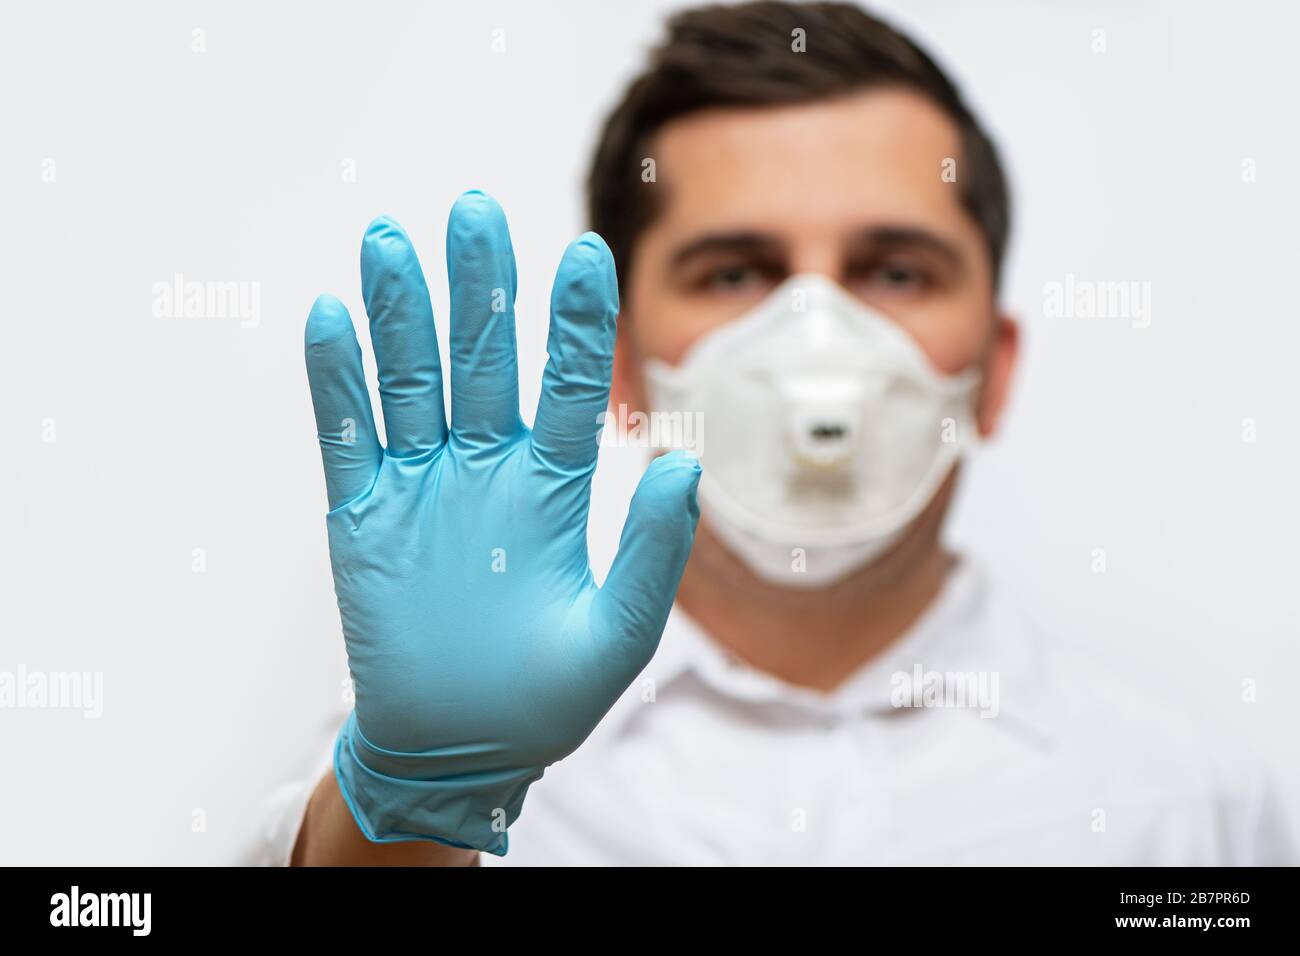 Ritratto del medico in uniforme medica con maschera facciale protettiva e una mano con guanti che mostra un segnale di stop. Interrompere il concetto COVID-19. Foto Stock